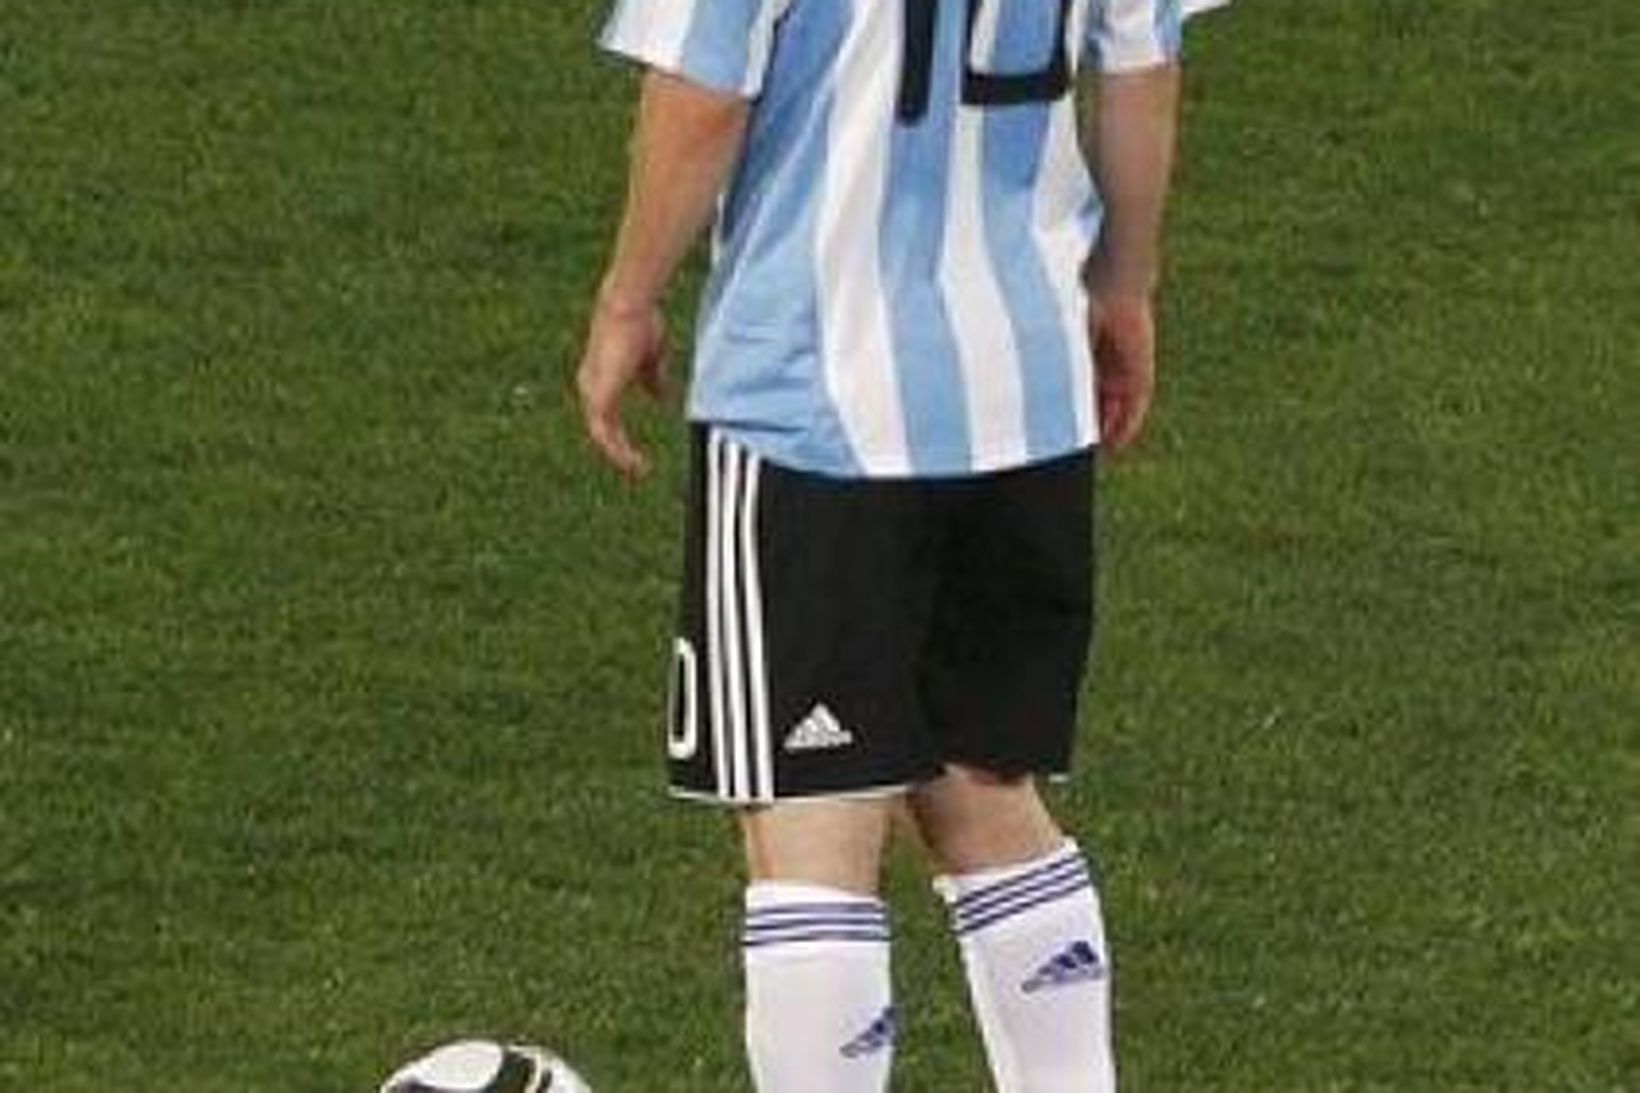 Leysigeislanum var meðal annars beint að Lionel Messi í leiknum …